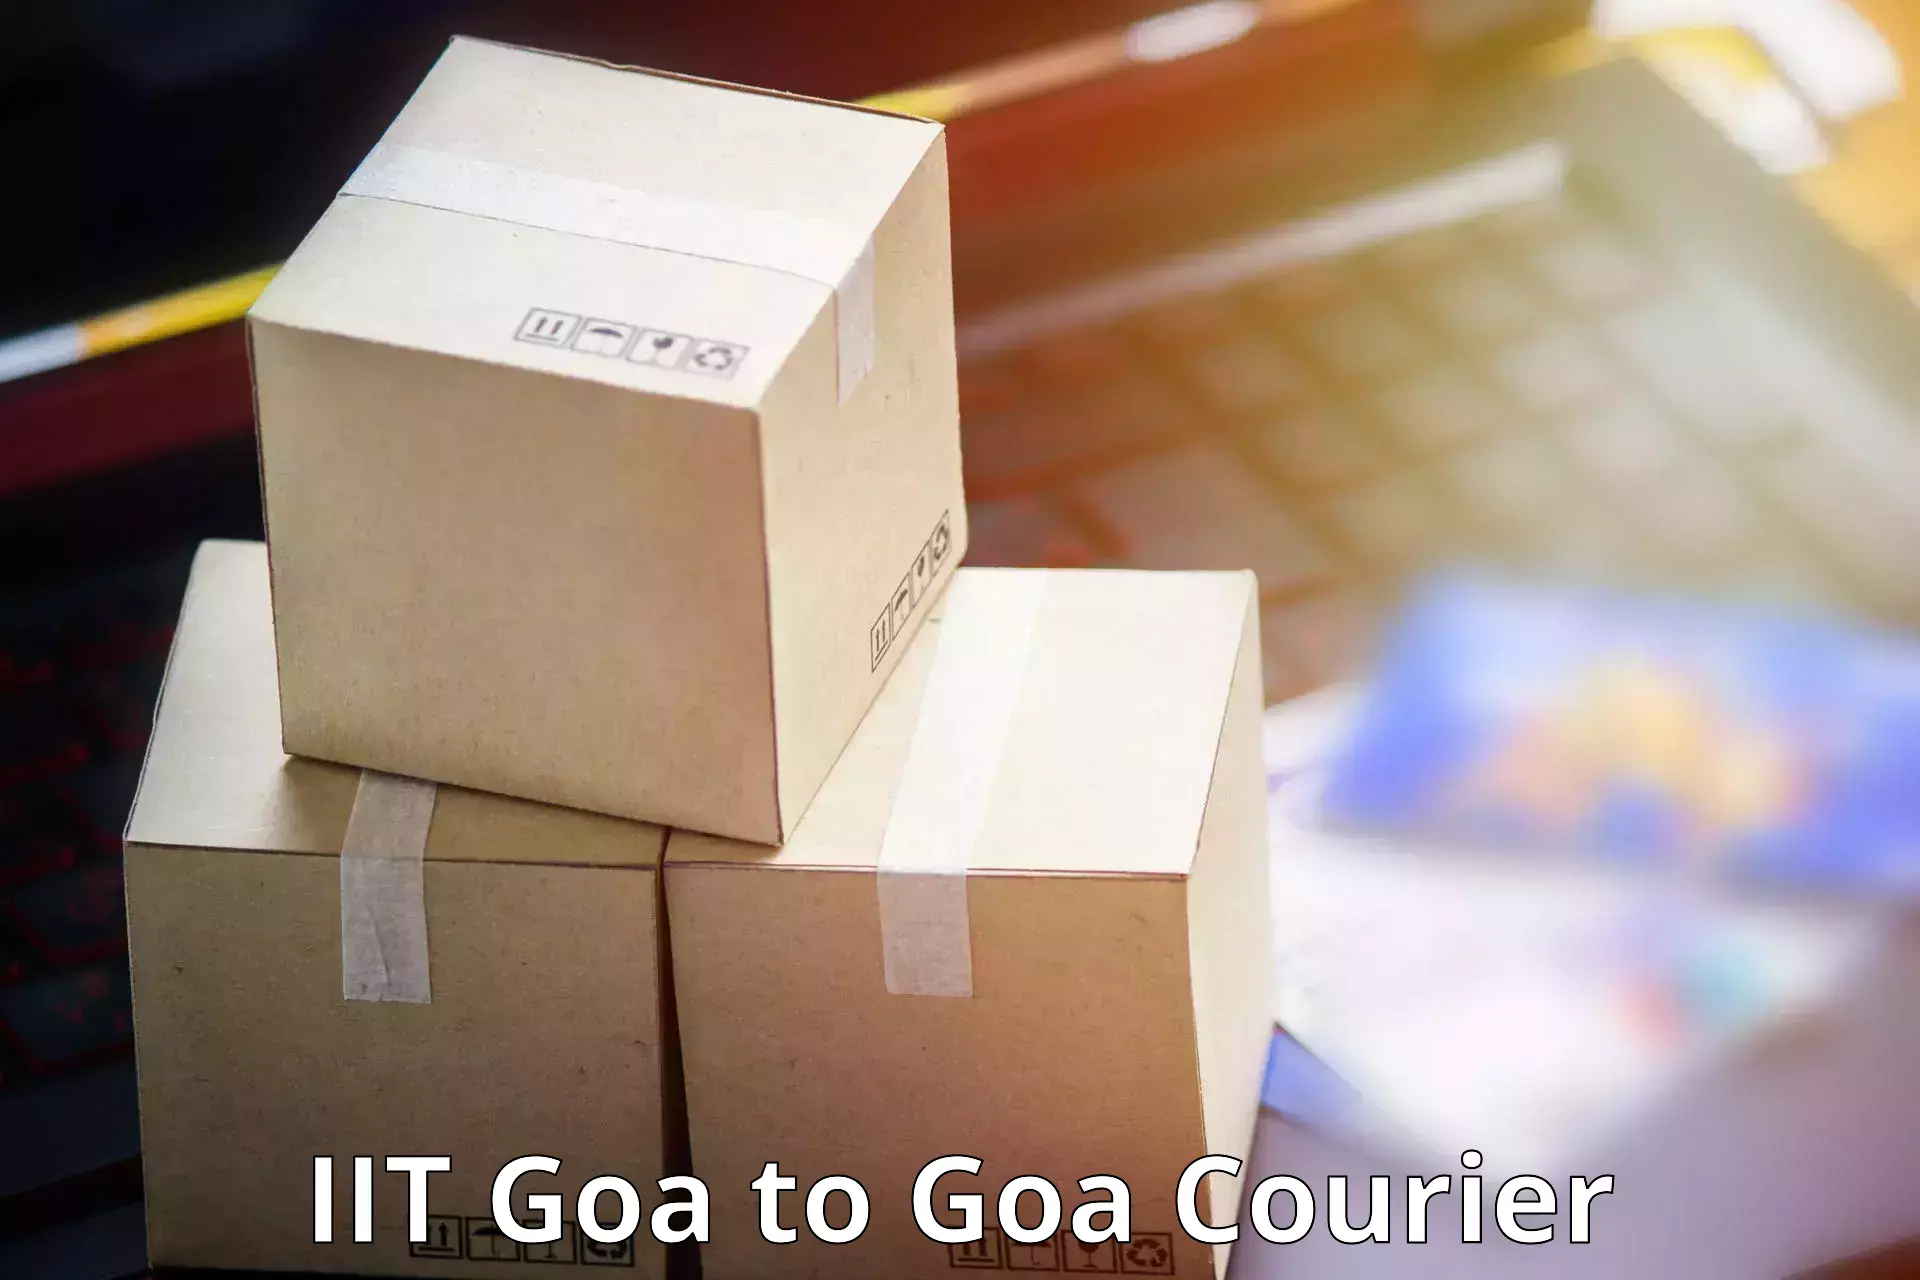 Long distance courier IIT Goa to IIT Goa